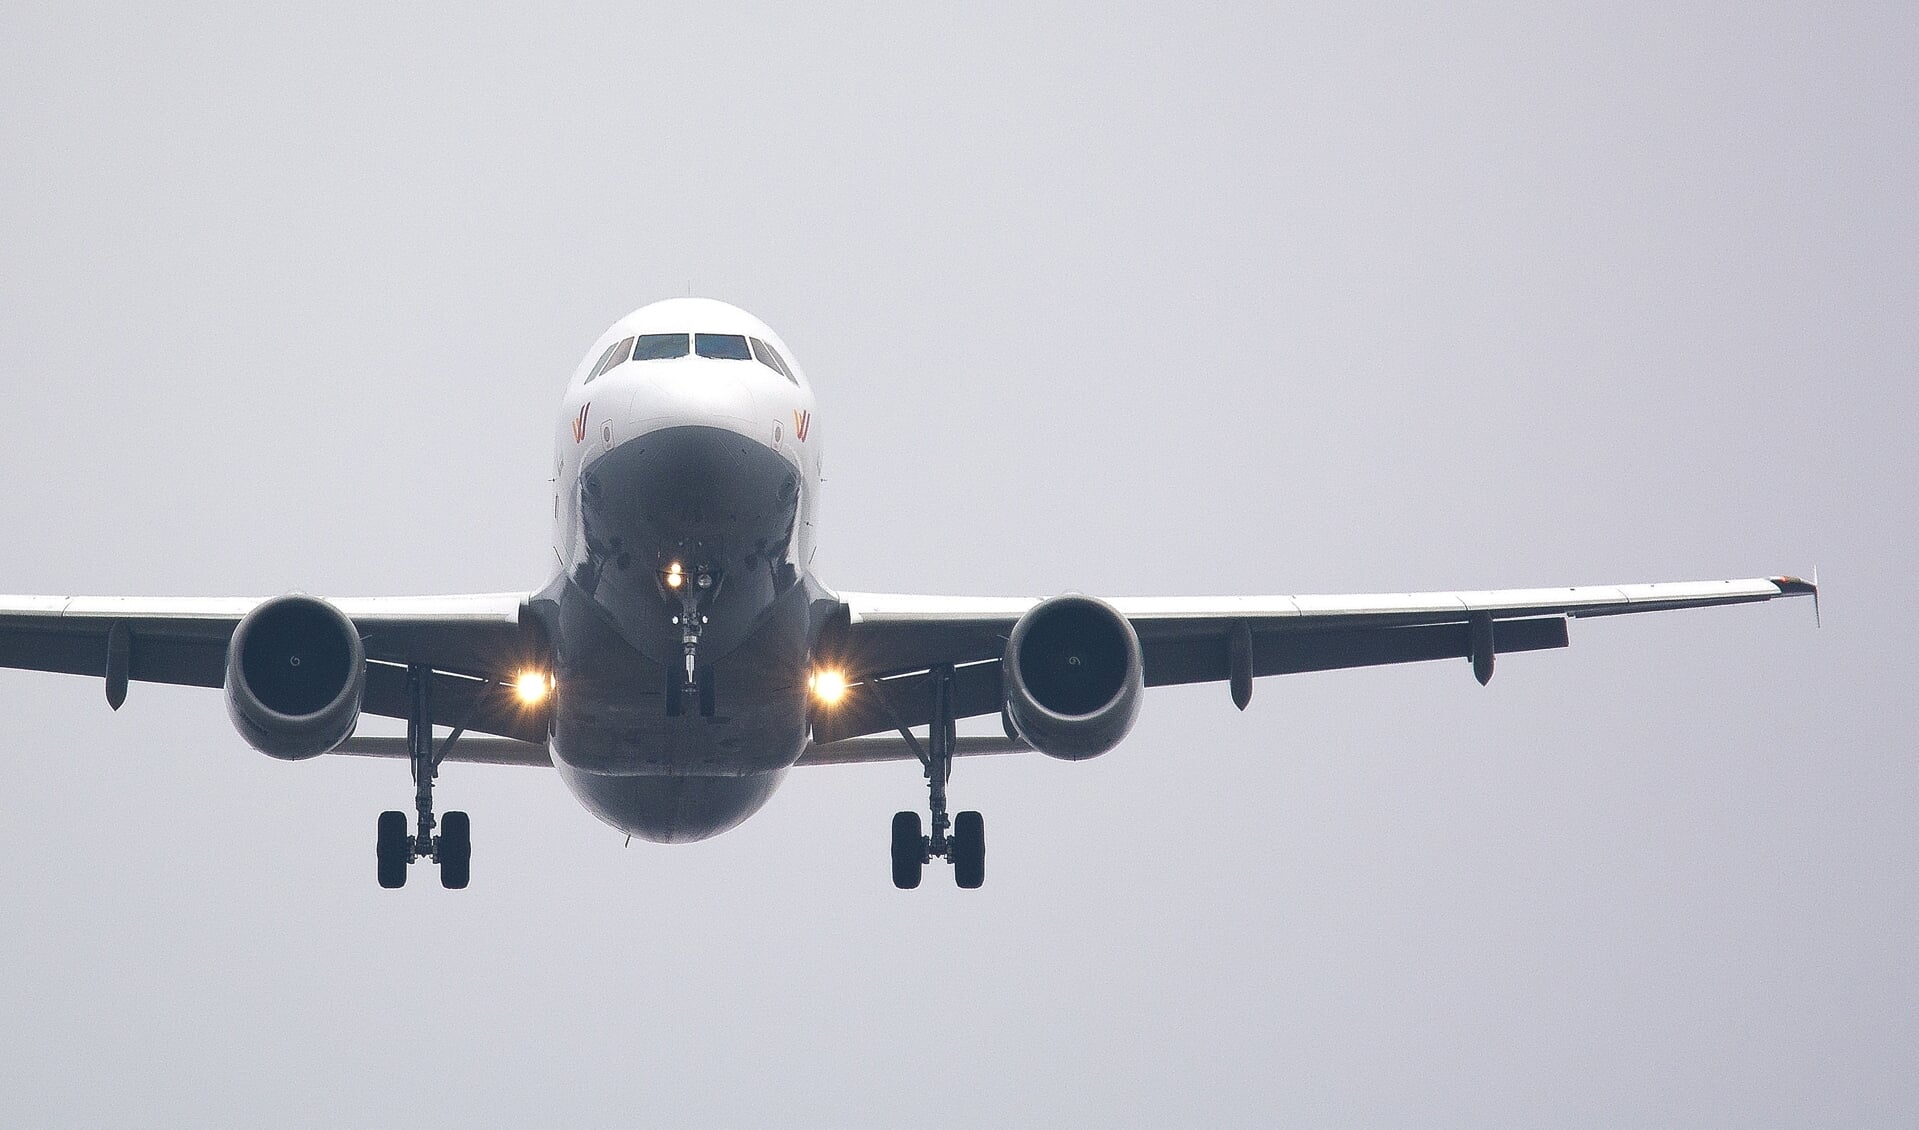 Luchtverkeersleiders navigeren per 12 augustus vliegtuig via GPS-signaal van en naar de start- en landingsbaan. 